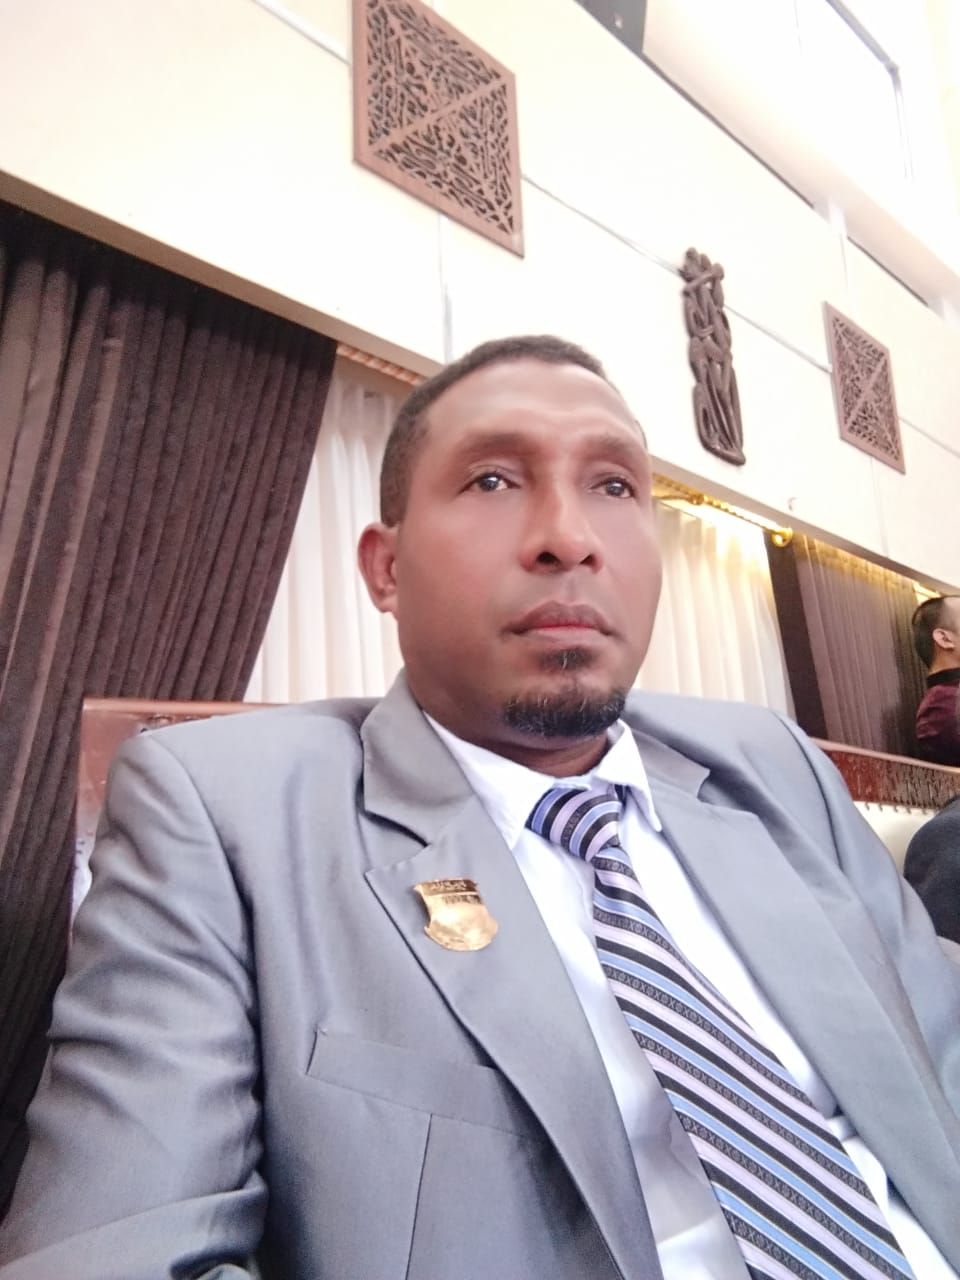 Anggota DPR Papua, Yohanis Ronsumbre, S.Sos, dalam sebuah giat usai dilantik pada April 2021 untuk Anggota DPR Papua Periode 2019 - 2024.